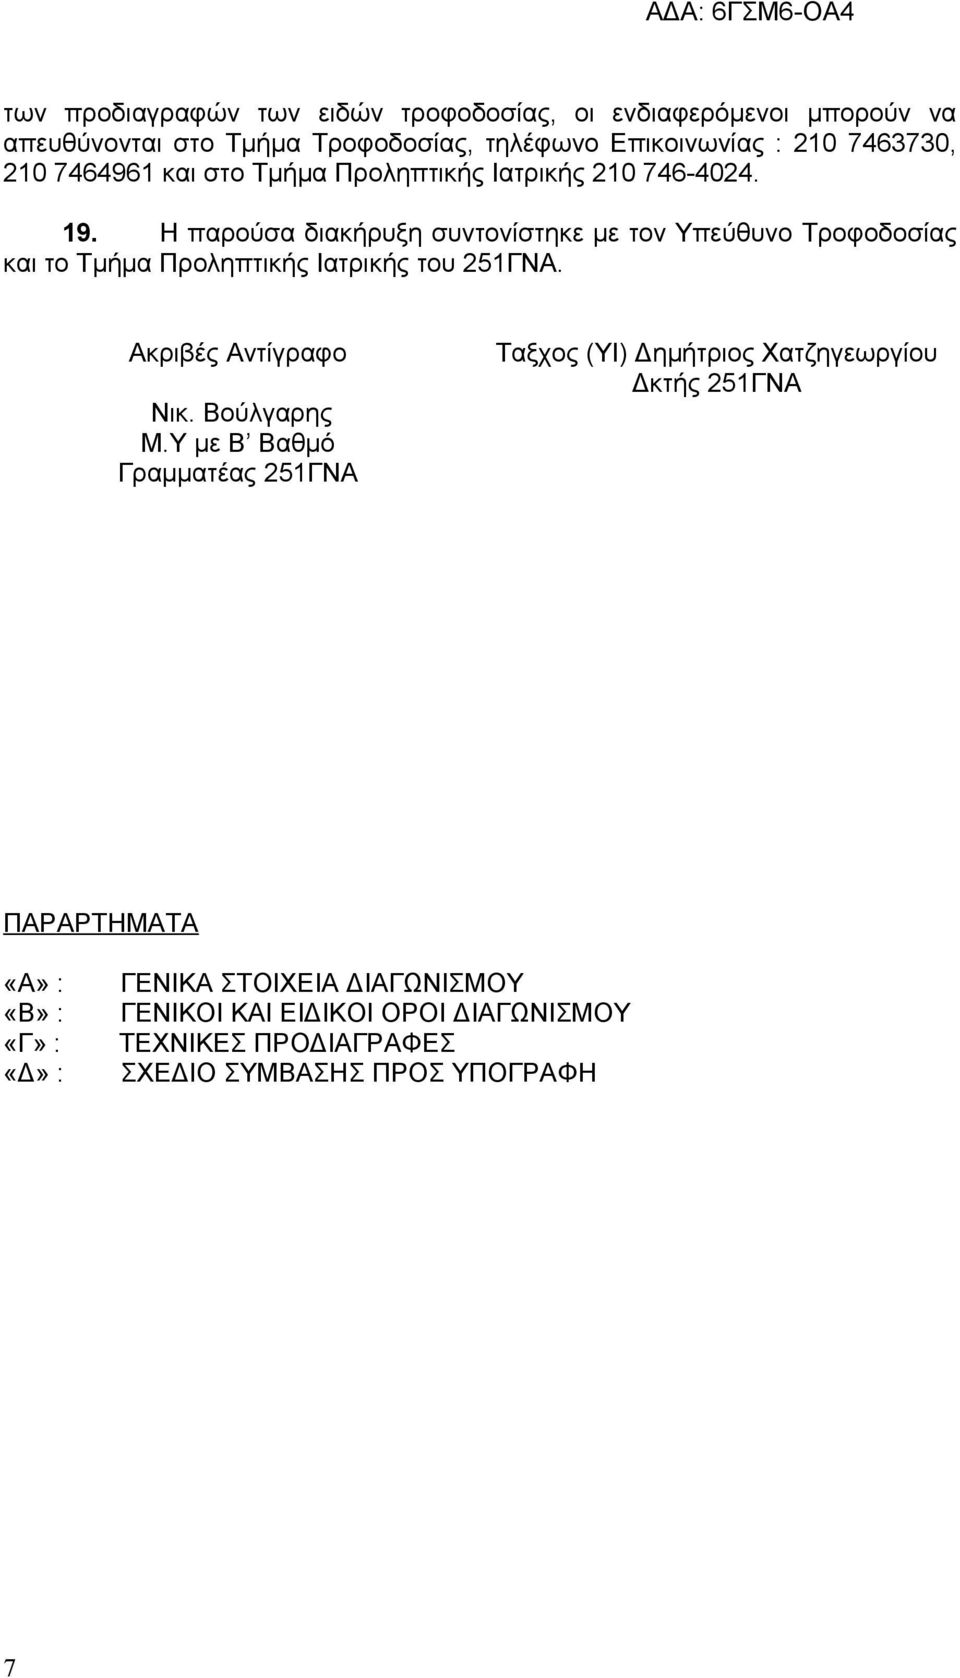 Η παρούσα διακήρυξη συντονίστηκε με τον Υπεύθυνο Τροφοδοσίας και το Τμήμα Προληπτικής Ιατρικής του 251ΓΝΑ. Ακριβές Αντίγραφο Νικ. Βούλγαρης M.